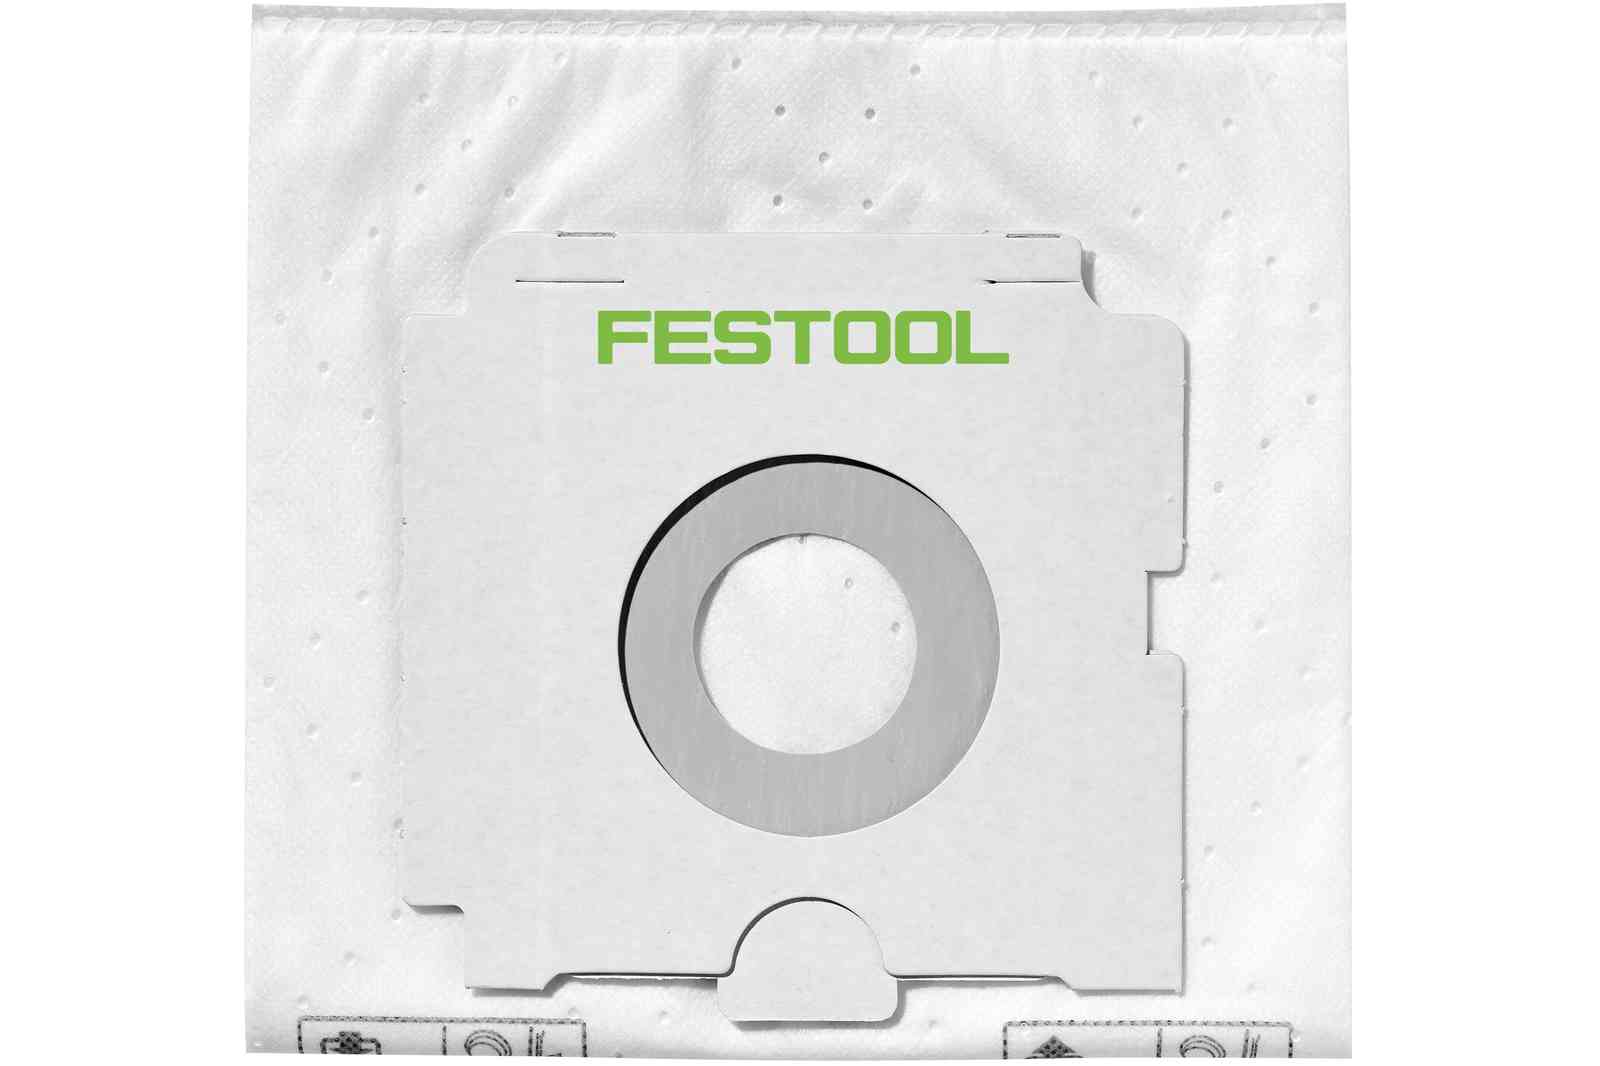 FESTOOL -  Sacchetto carta filtro - note SELFCLEAN - info FIS-CT 36/5 - PER CT 36